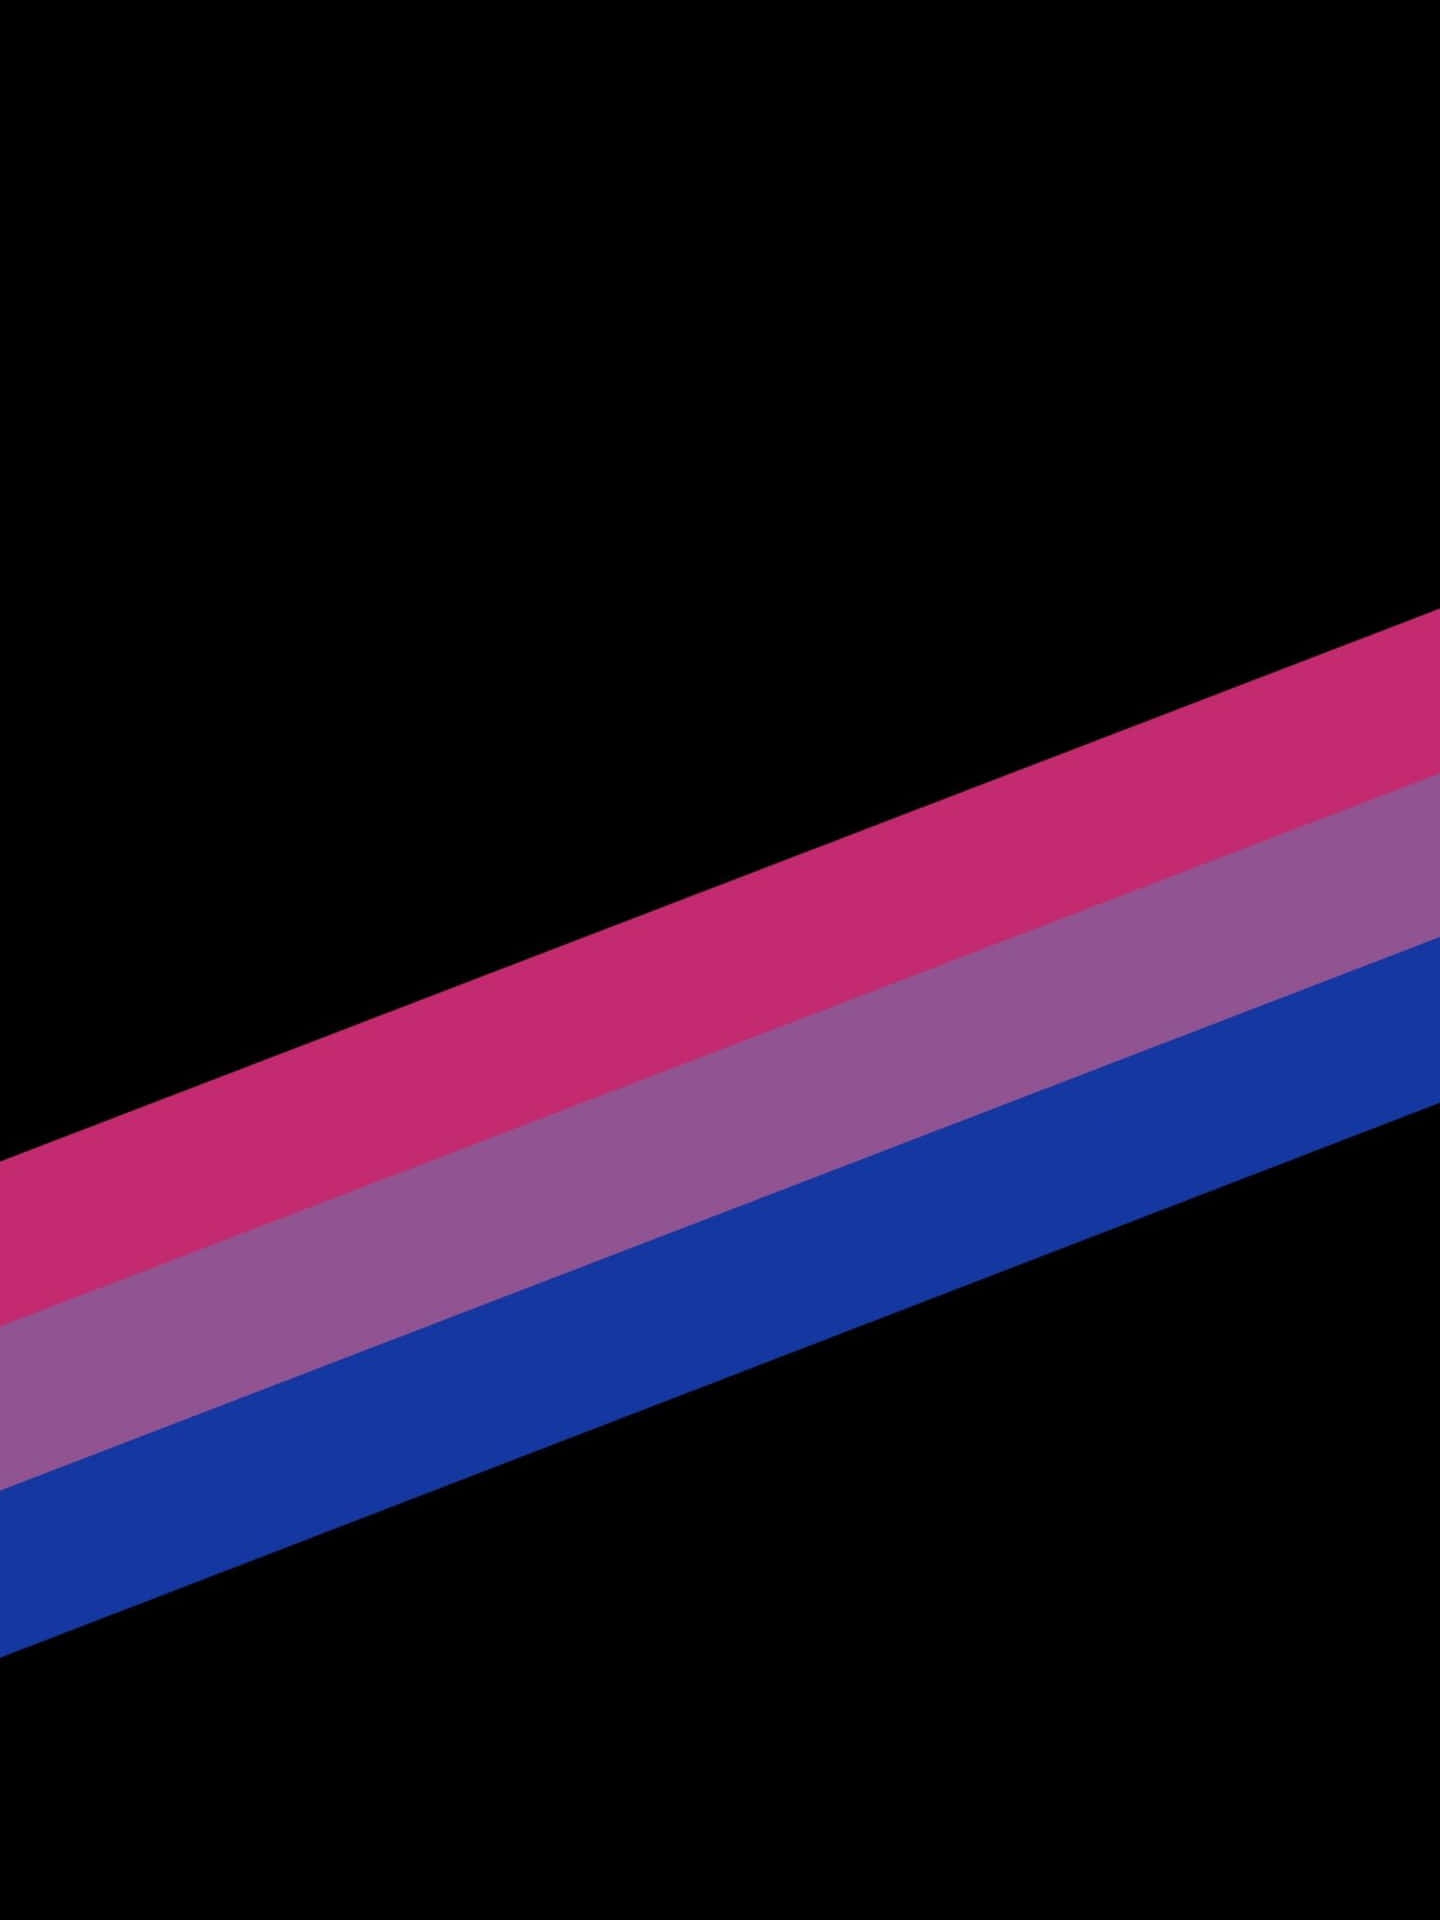 Ästhetischelgbt-regenbogen-bisexuellen-flagge Wallpaper